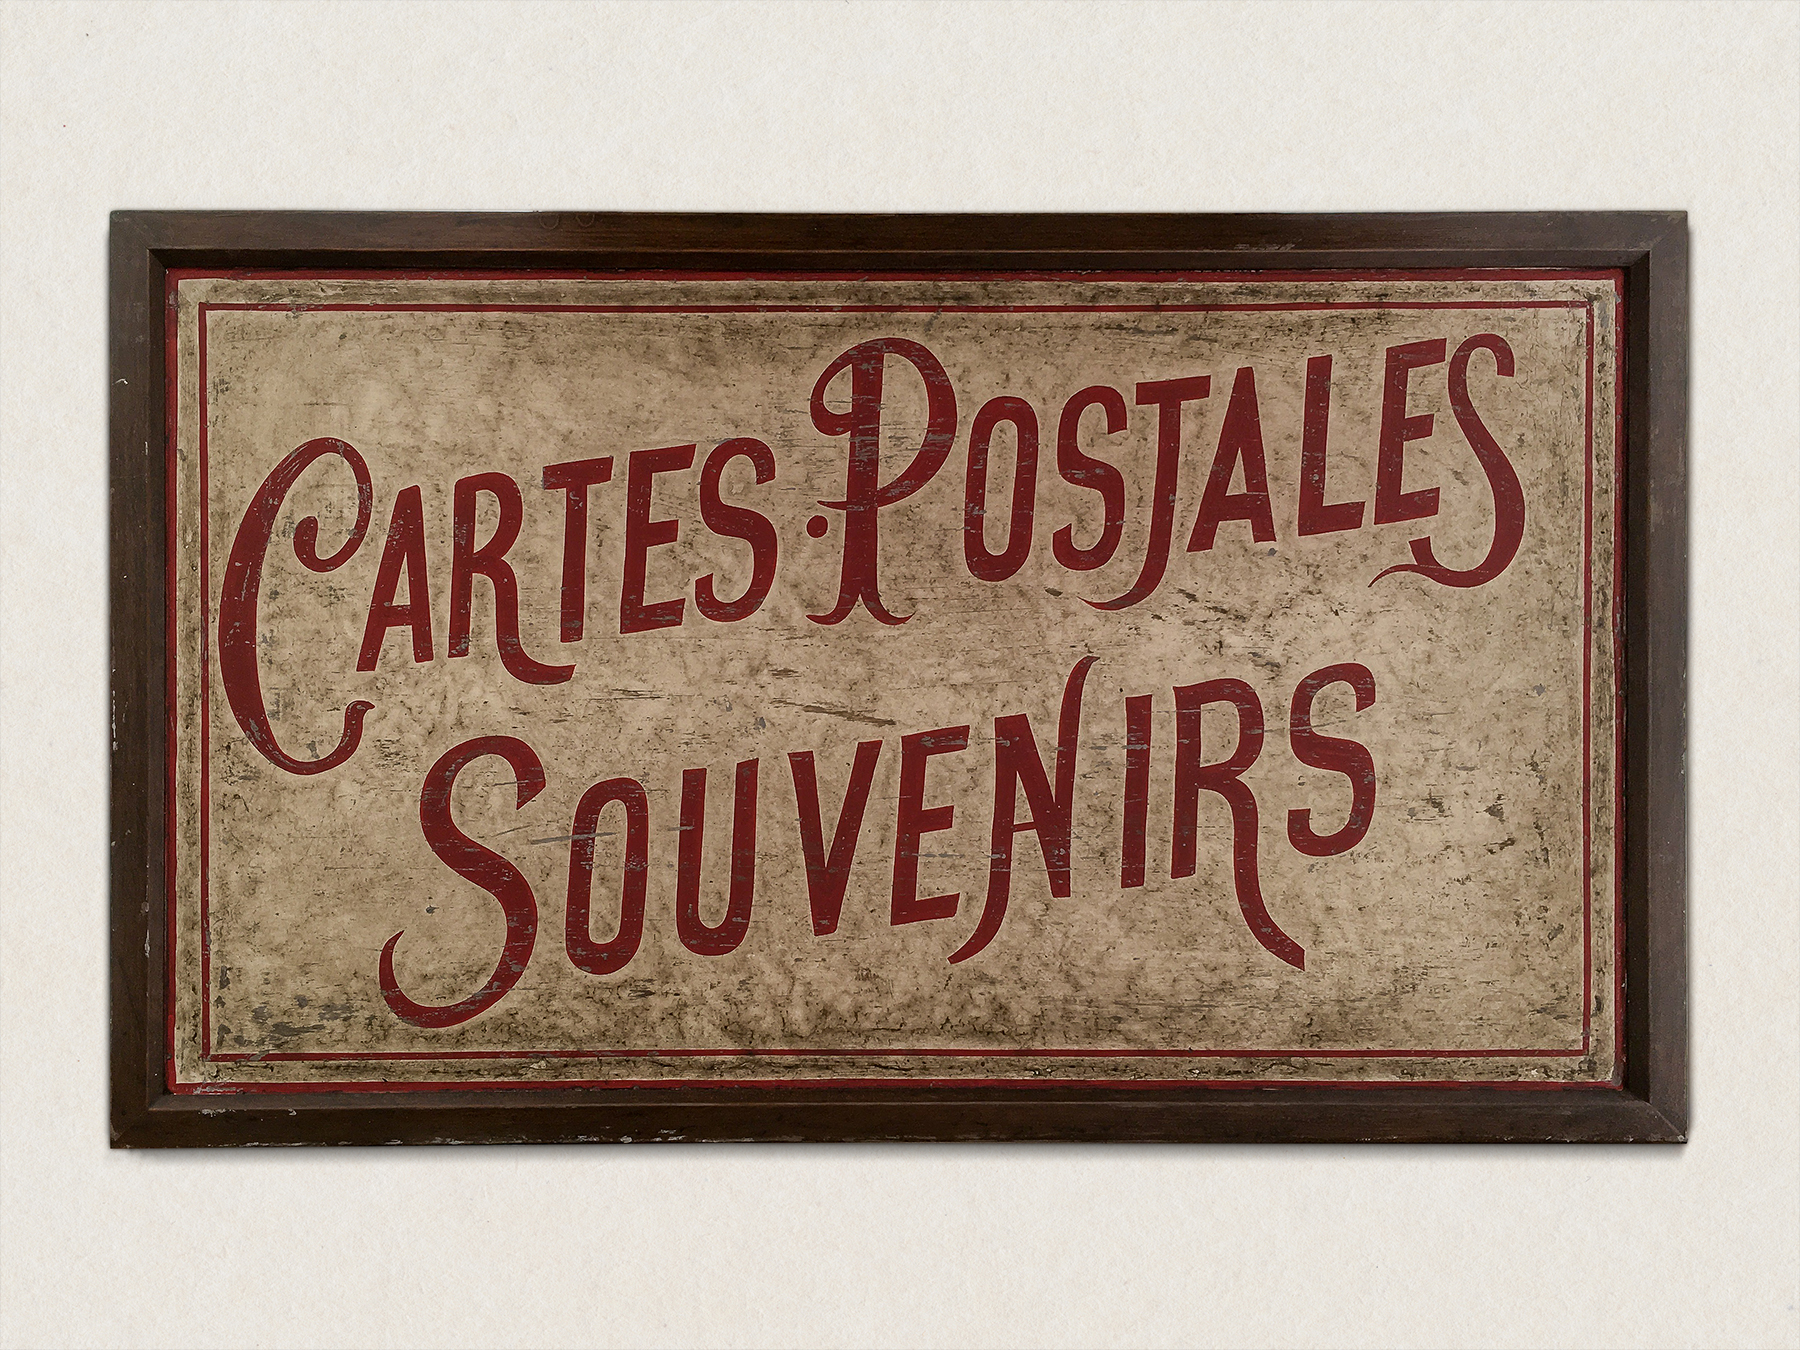 1917 – Souvenir sign